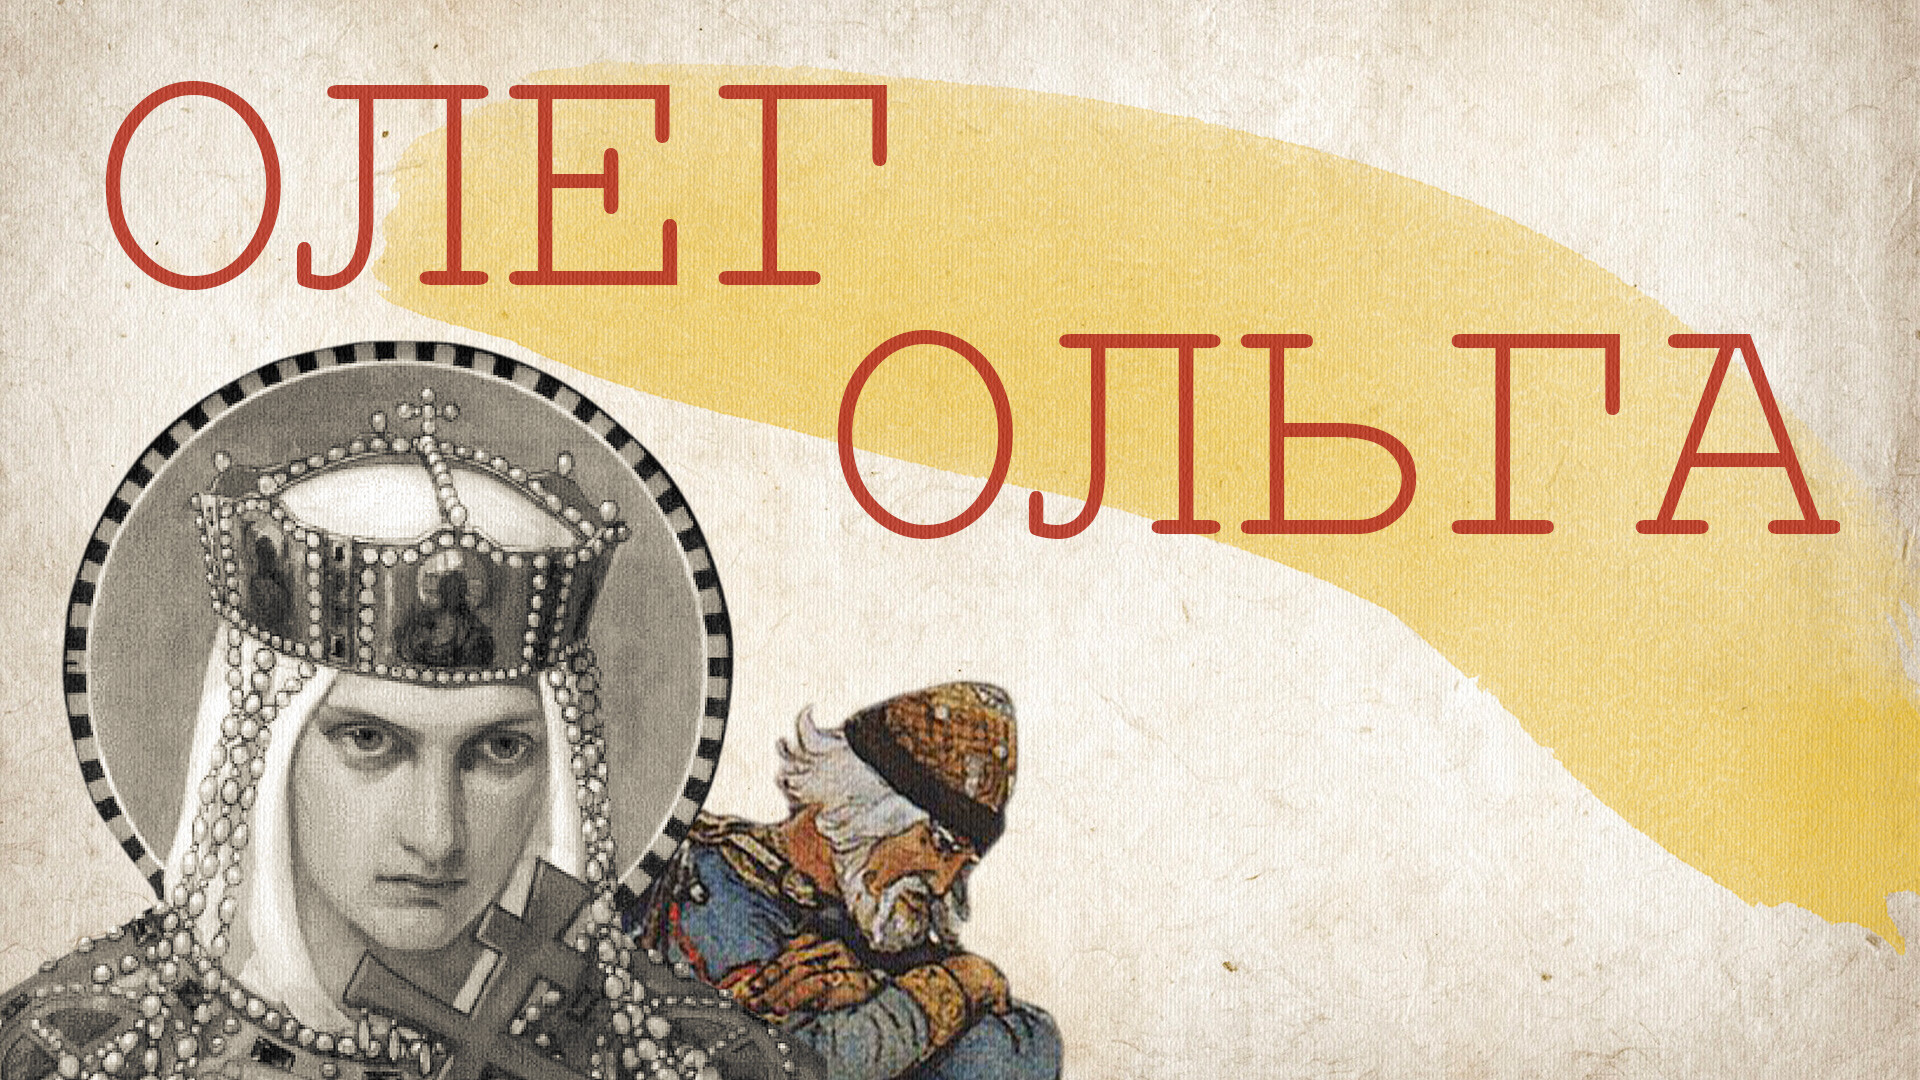 Kneginja Olga in knez Oleg
